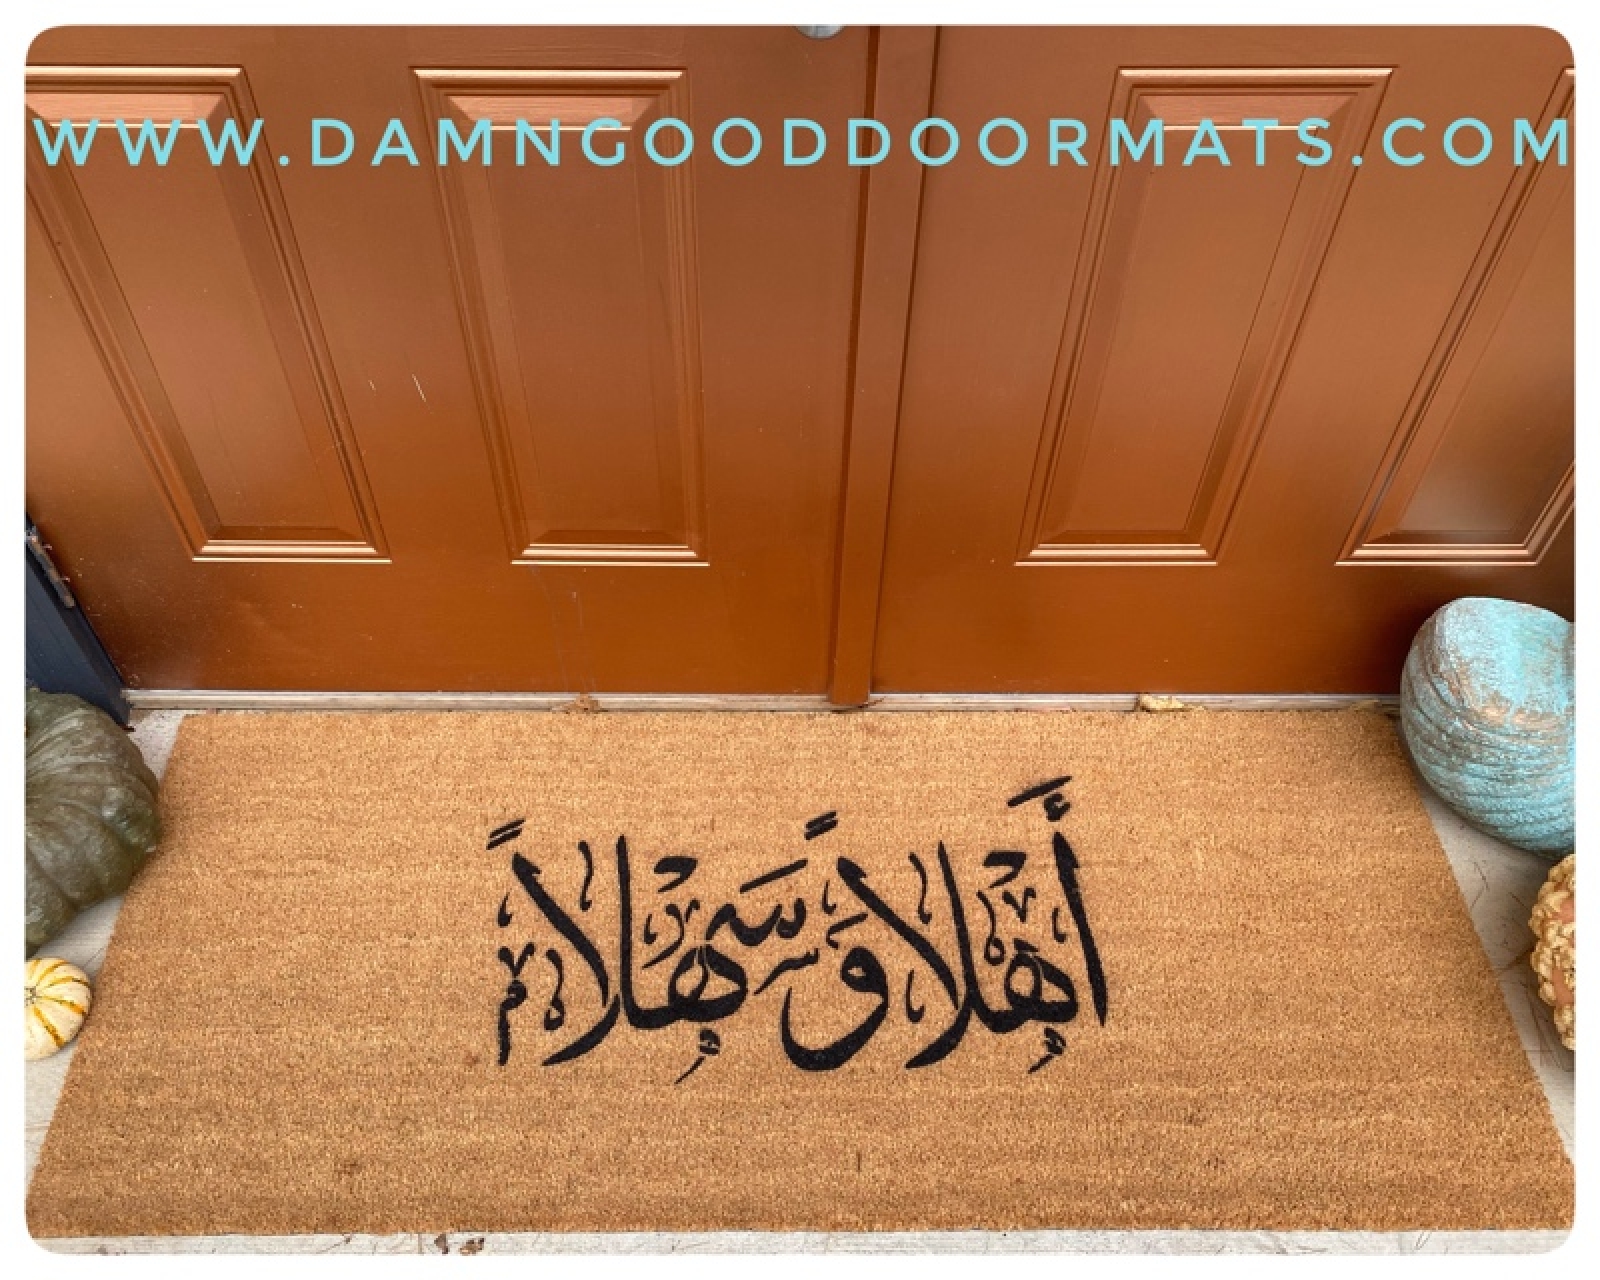 https://www.damngooddoormats.com/sites/damngooddoormats.indiemade.com/files/imagecache/im_clientsite_product_zoom/arabic_doublewide_extra_large_etsy_damn_good_doormats.jpg